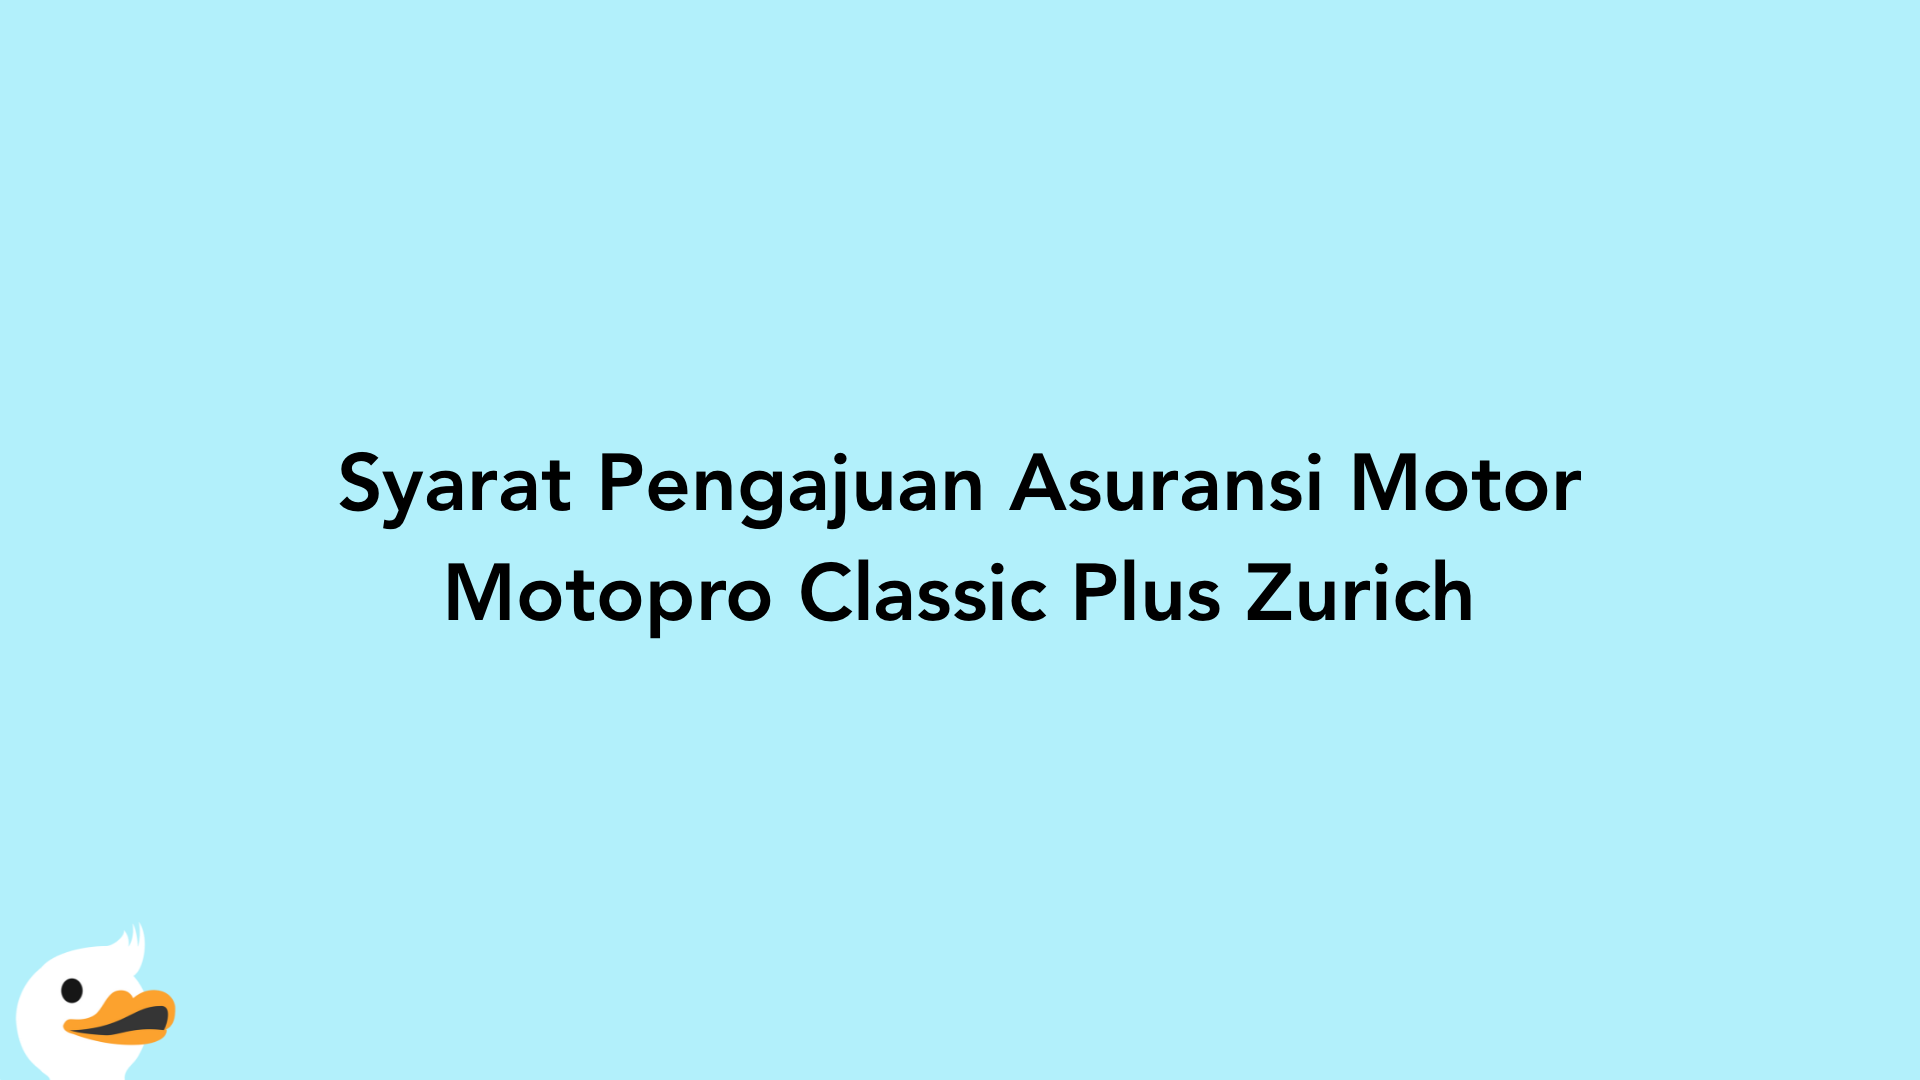 Syarat Pengajuan Asuransi Motor Motopro Classic Plus Zurich